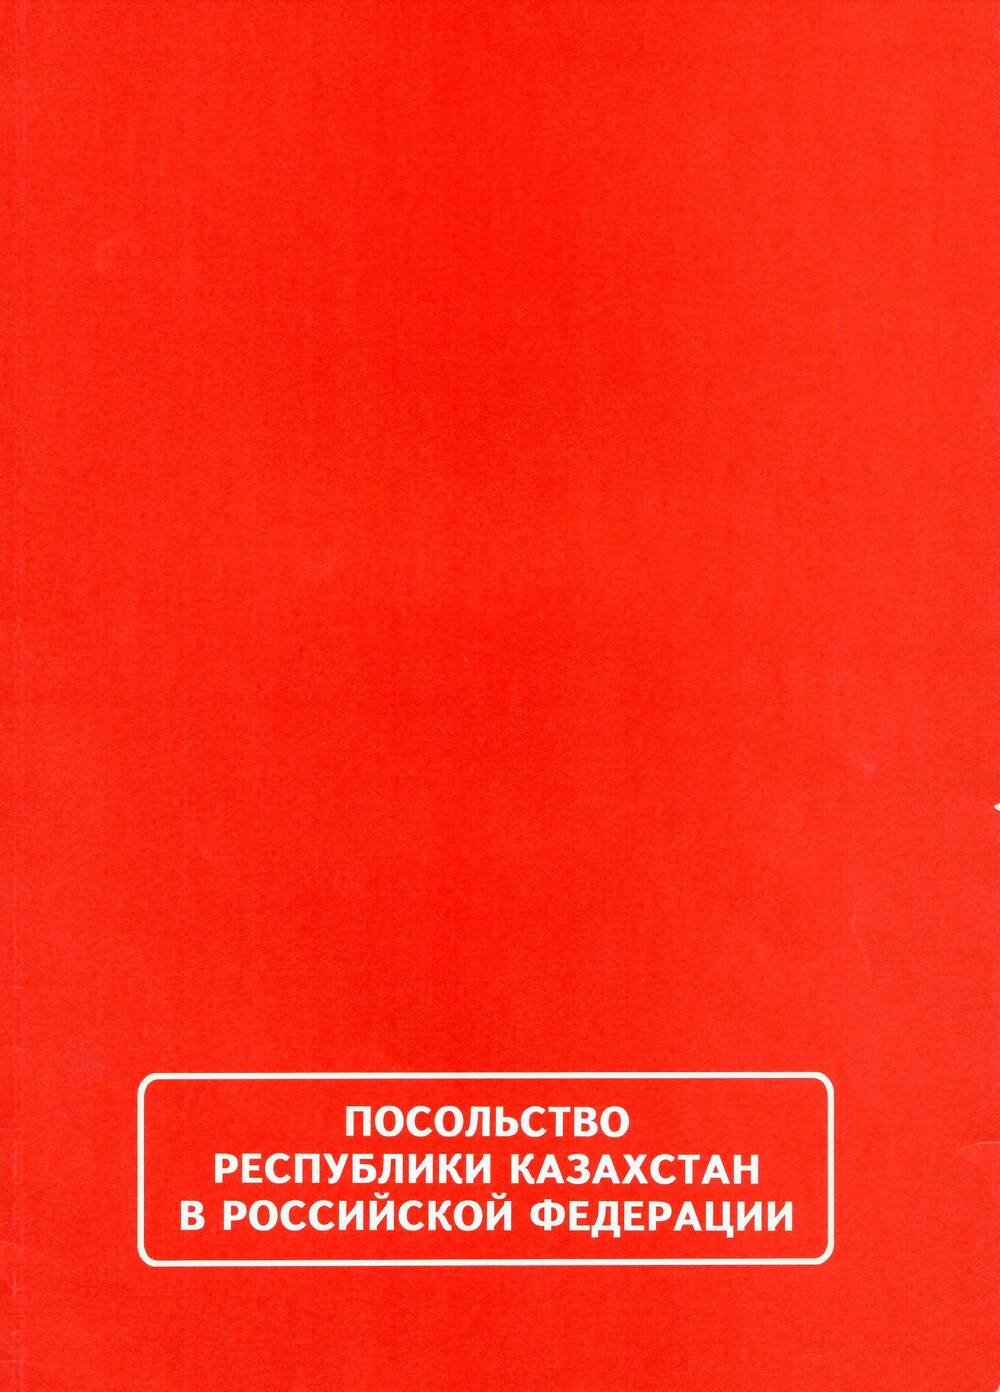 Обложка к Поздравлению Военного Атташе генерал-майора Т. Умбетбаева, 2001 г. 